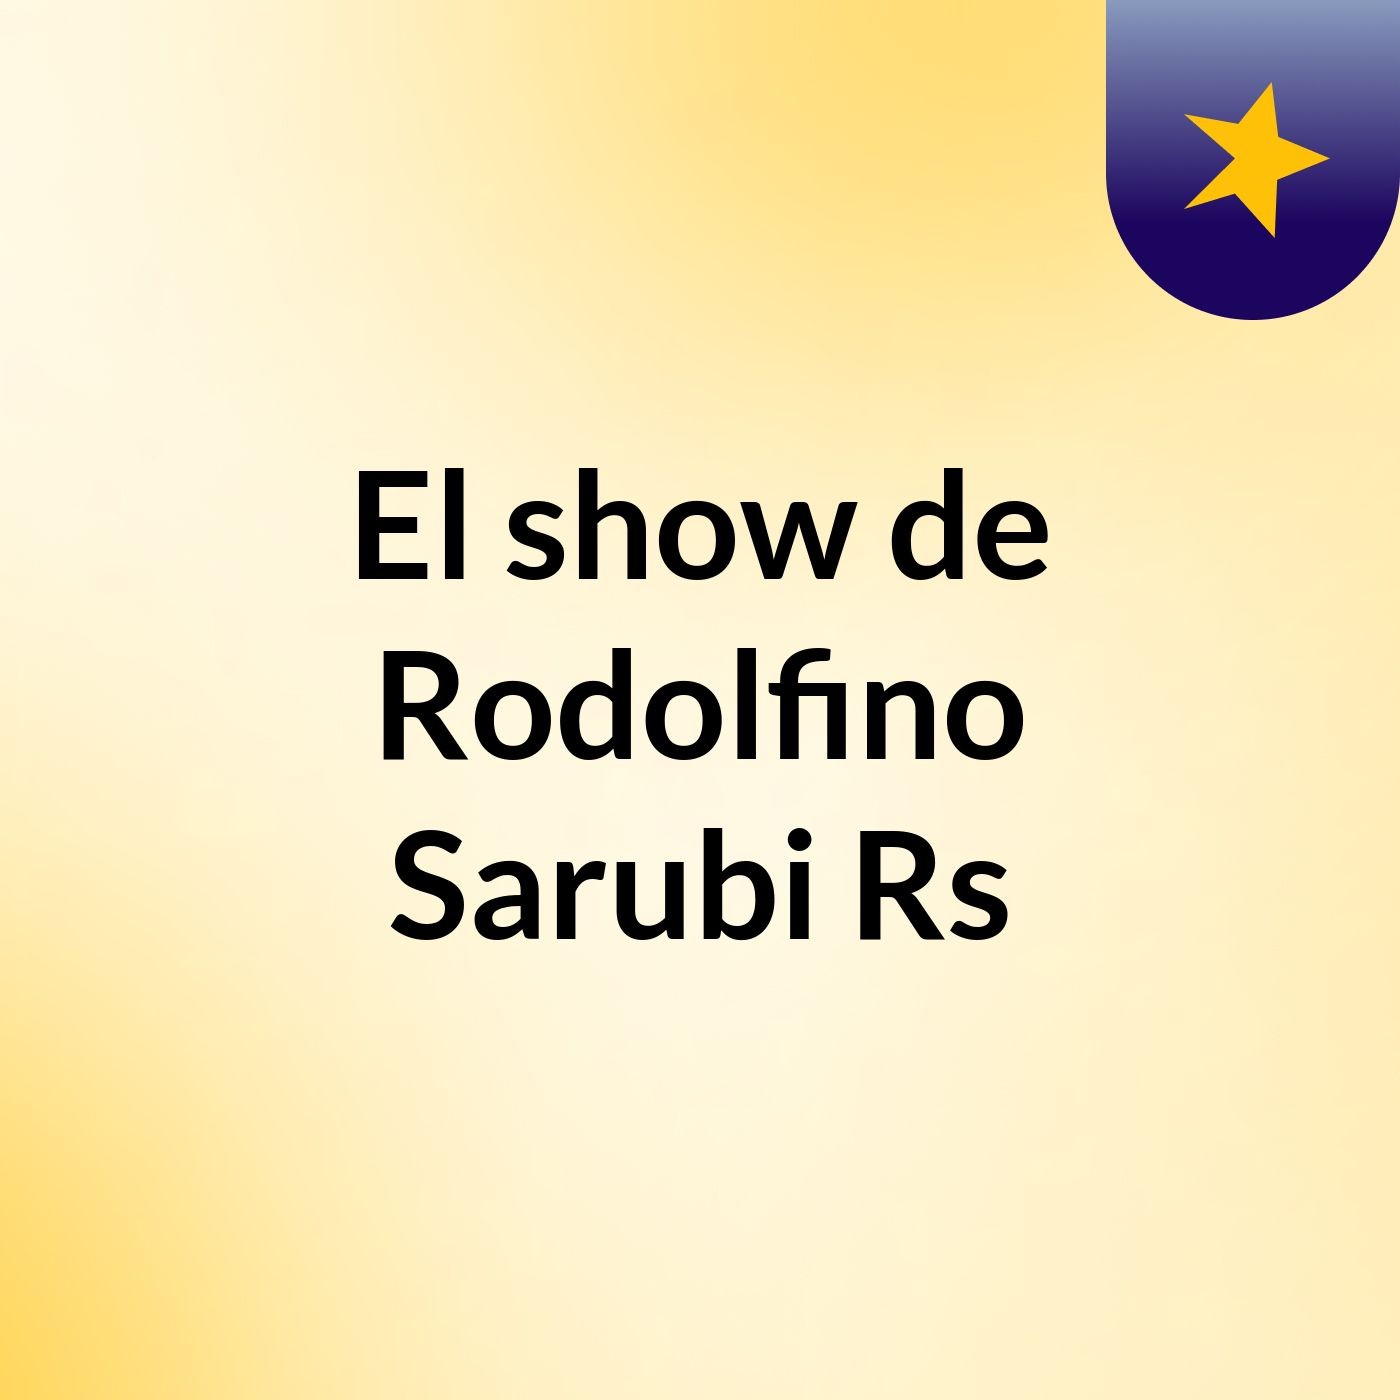 El show de Rodolfino Sarubi Rs